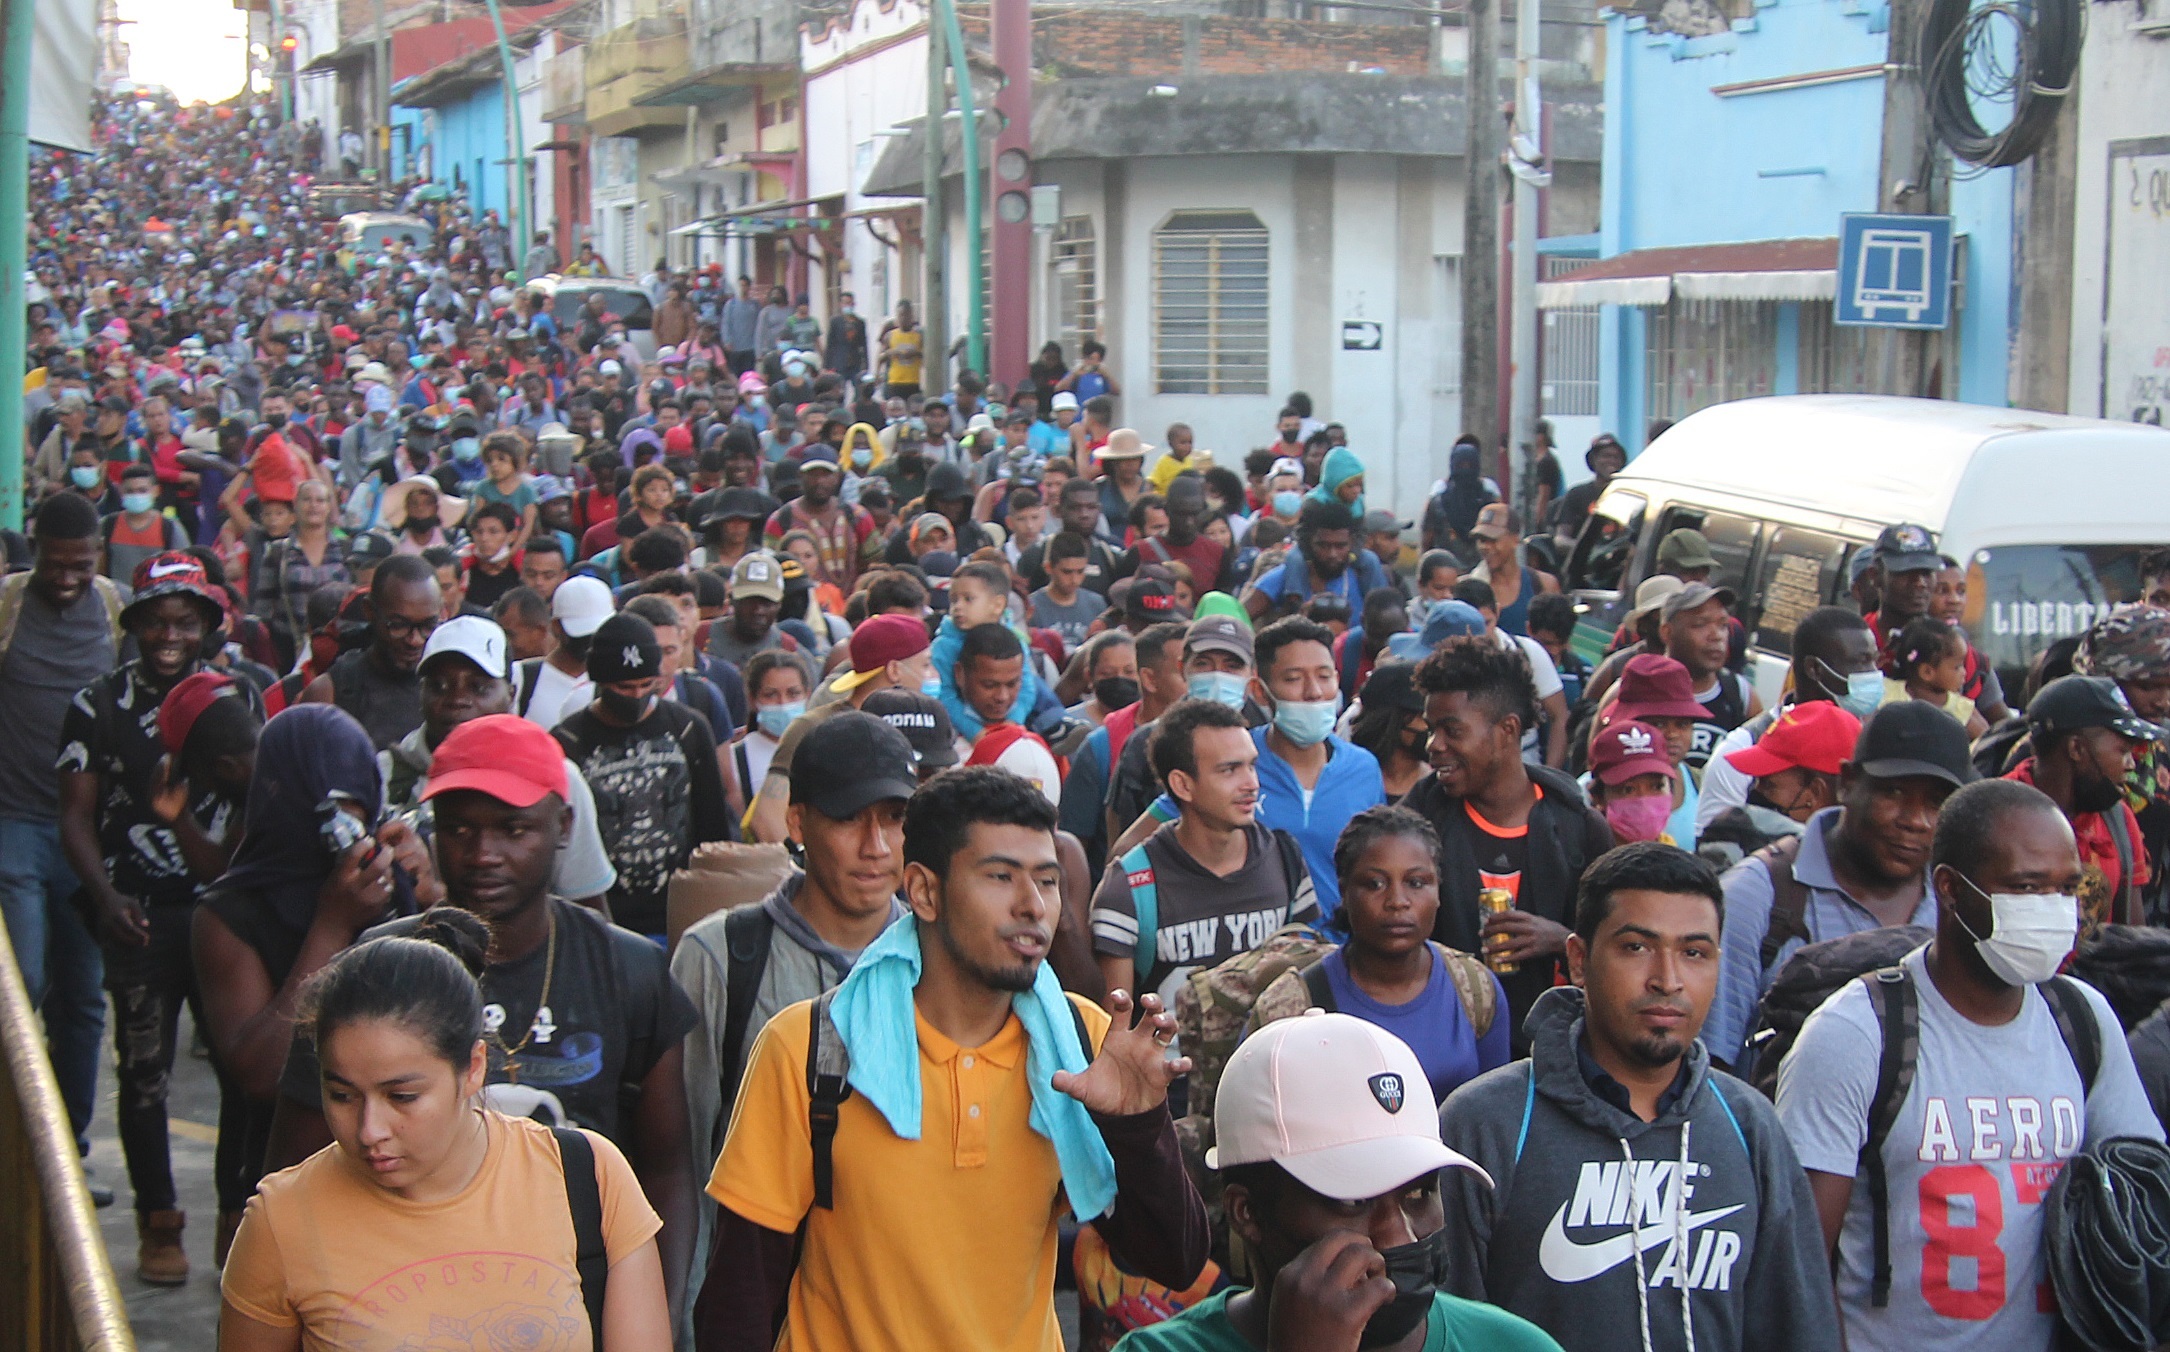 Miles de migrantes centroamericanos cruzan México en busca de llegar de manera irregular a Estados Unidos. (Foto Prensa Libre: EFE)